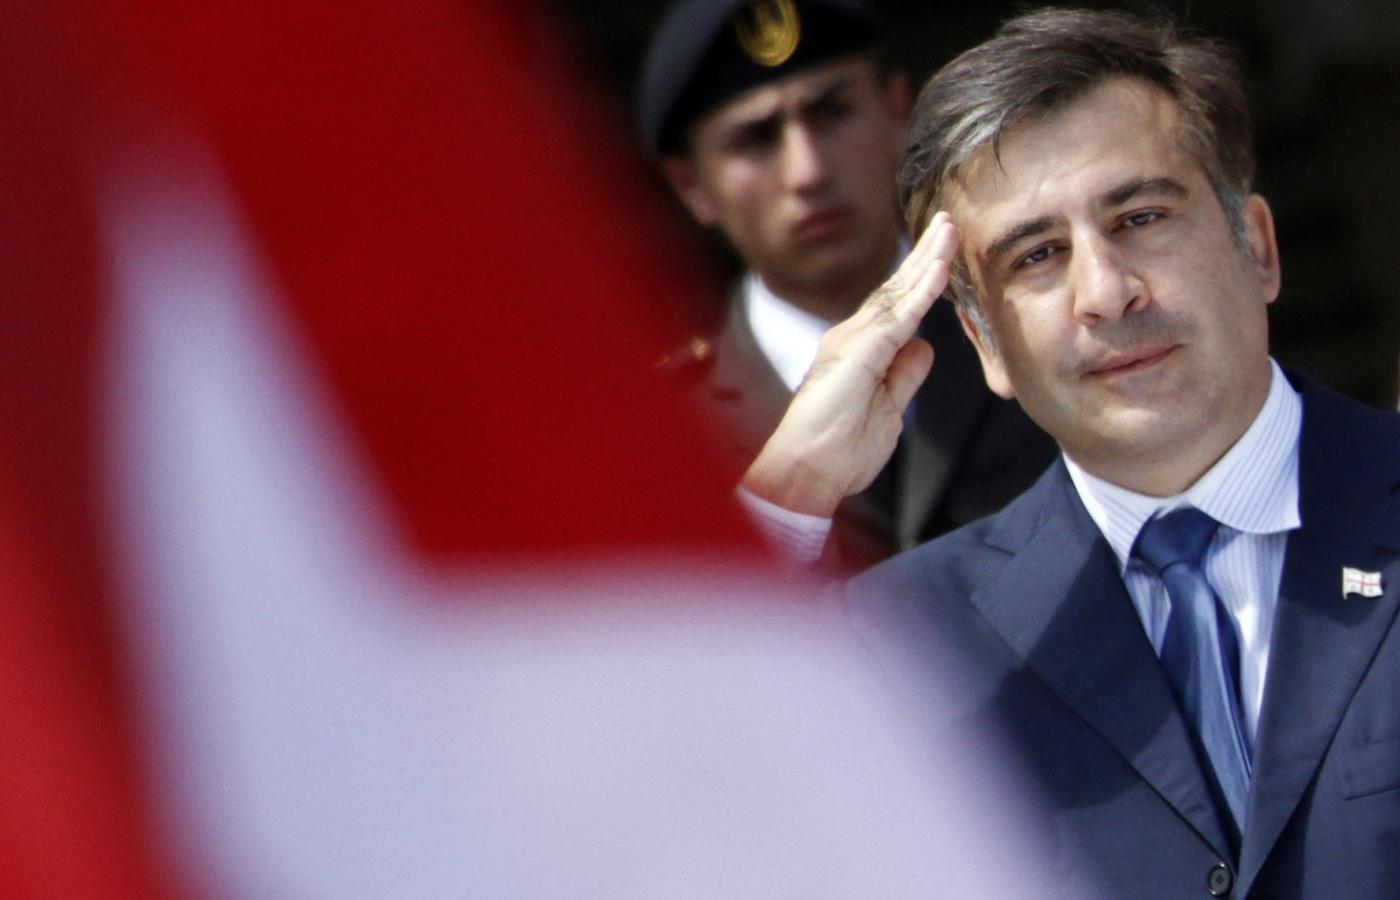 Czy Saakaszwili nieodpowiedzialnie wpakował Gruzinów w nikomu niepotrzebną wojnę? Na fot. tegoroczne obchody 20. rocznicy niepodległości.